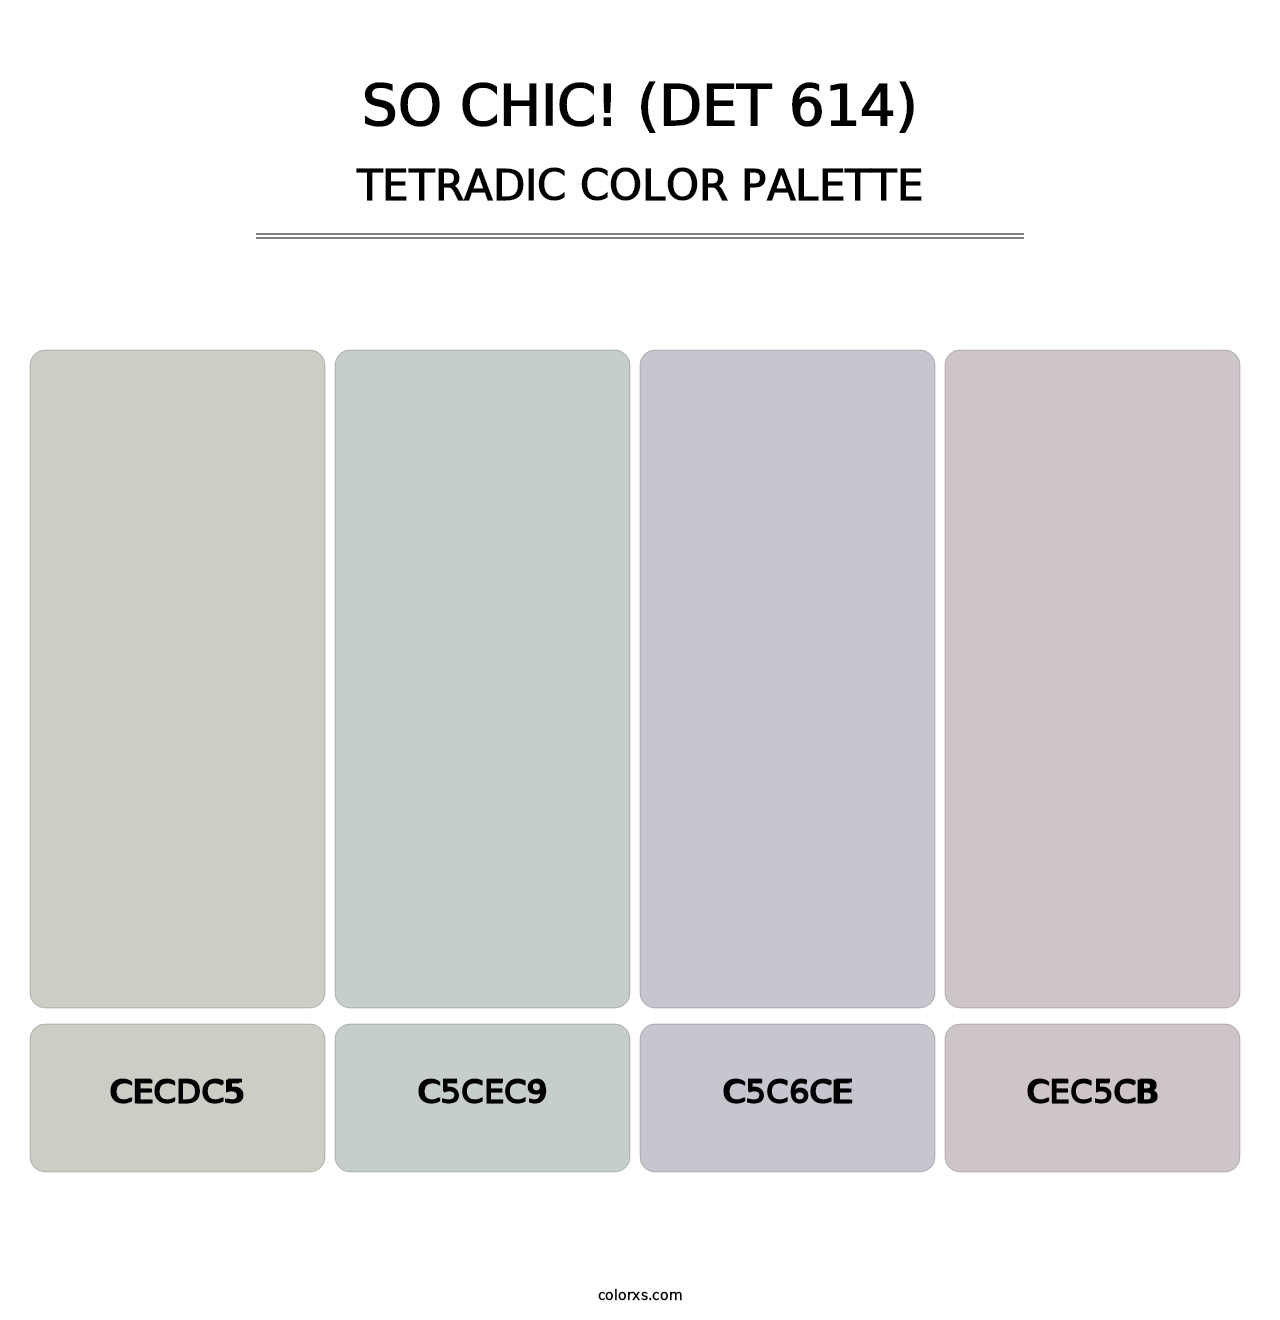 So Chic! (DET 614) - Tetradic Color Palette